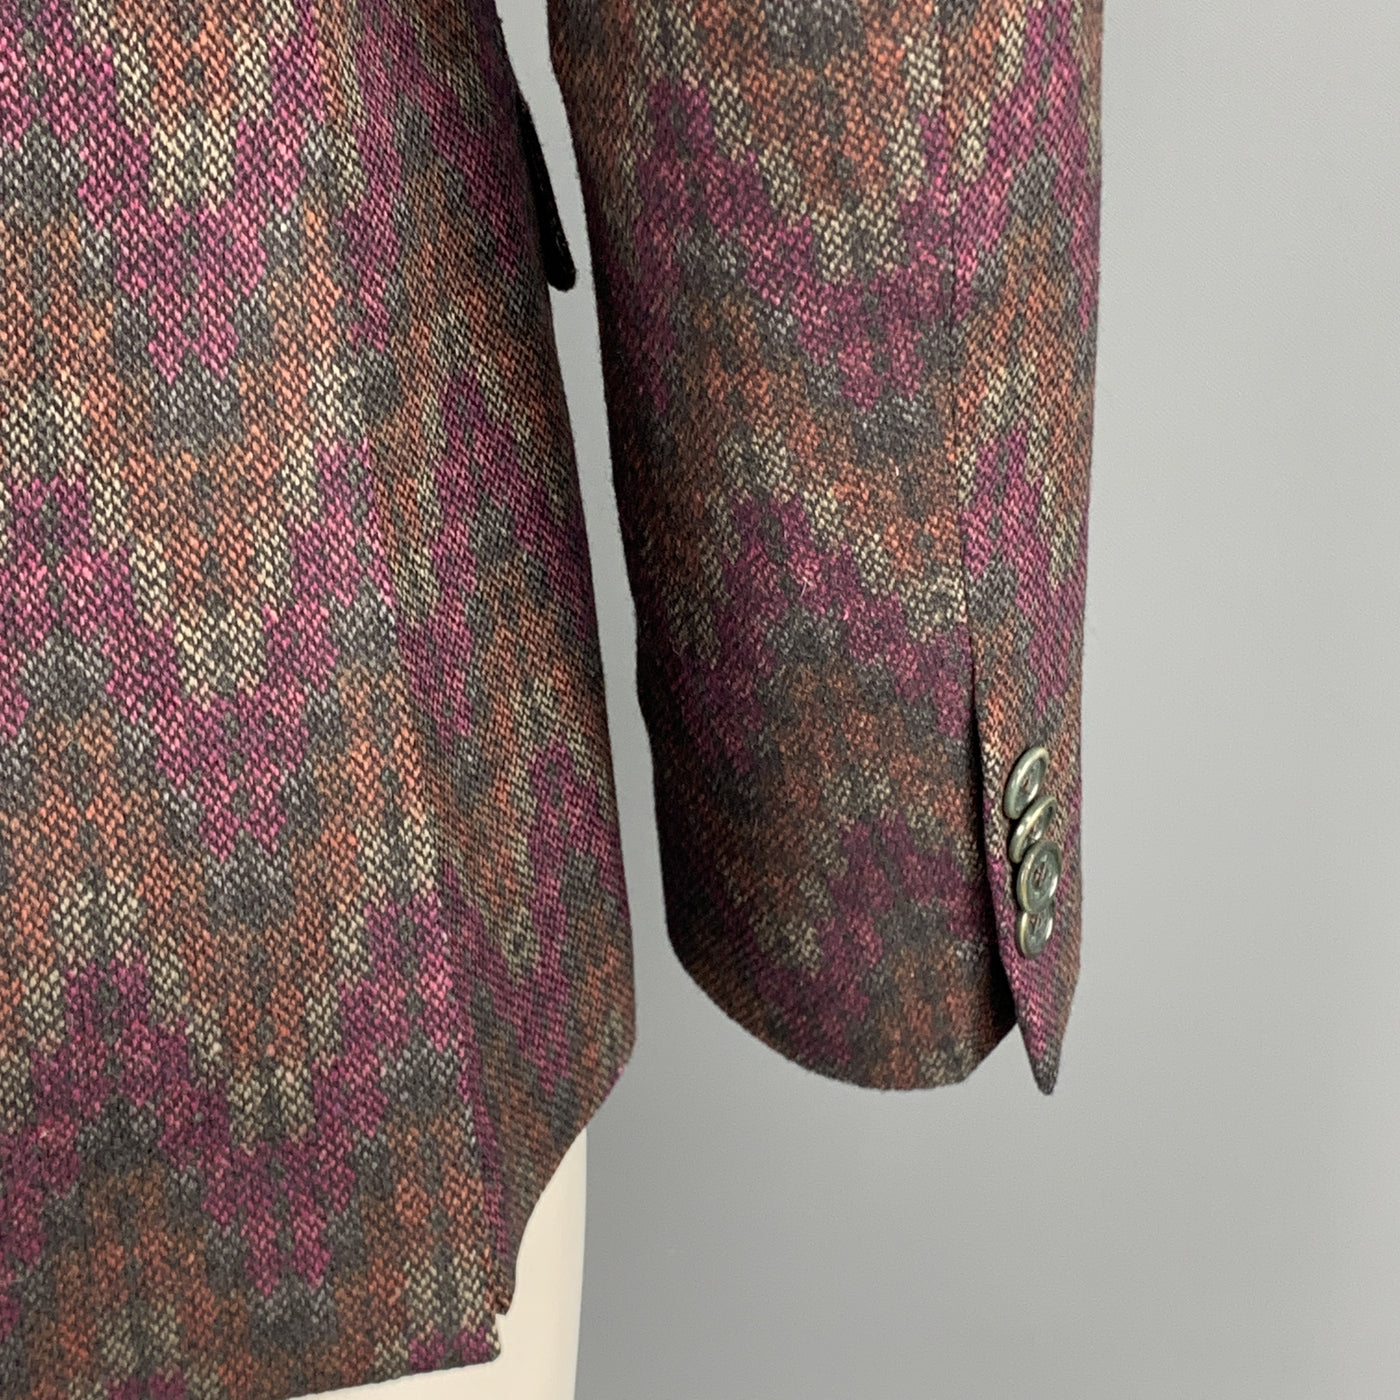 ETRO Chest Size 42 Print Multi-Color Wool Blend Notch Lapel Sport Coat